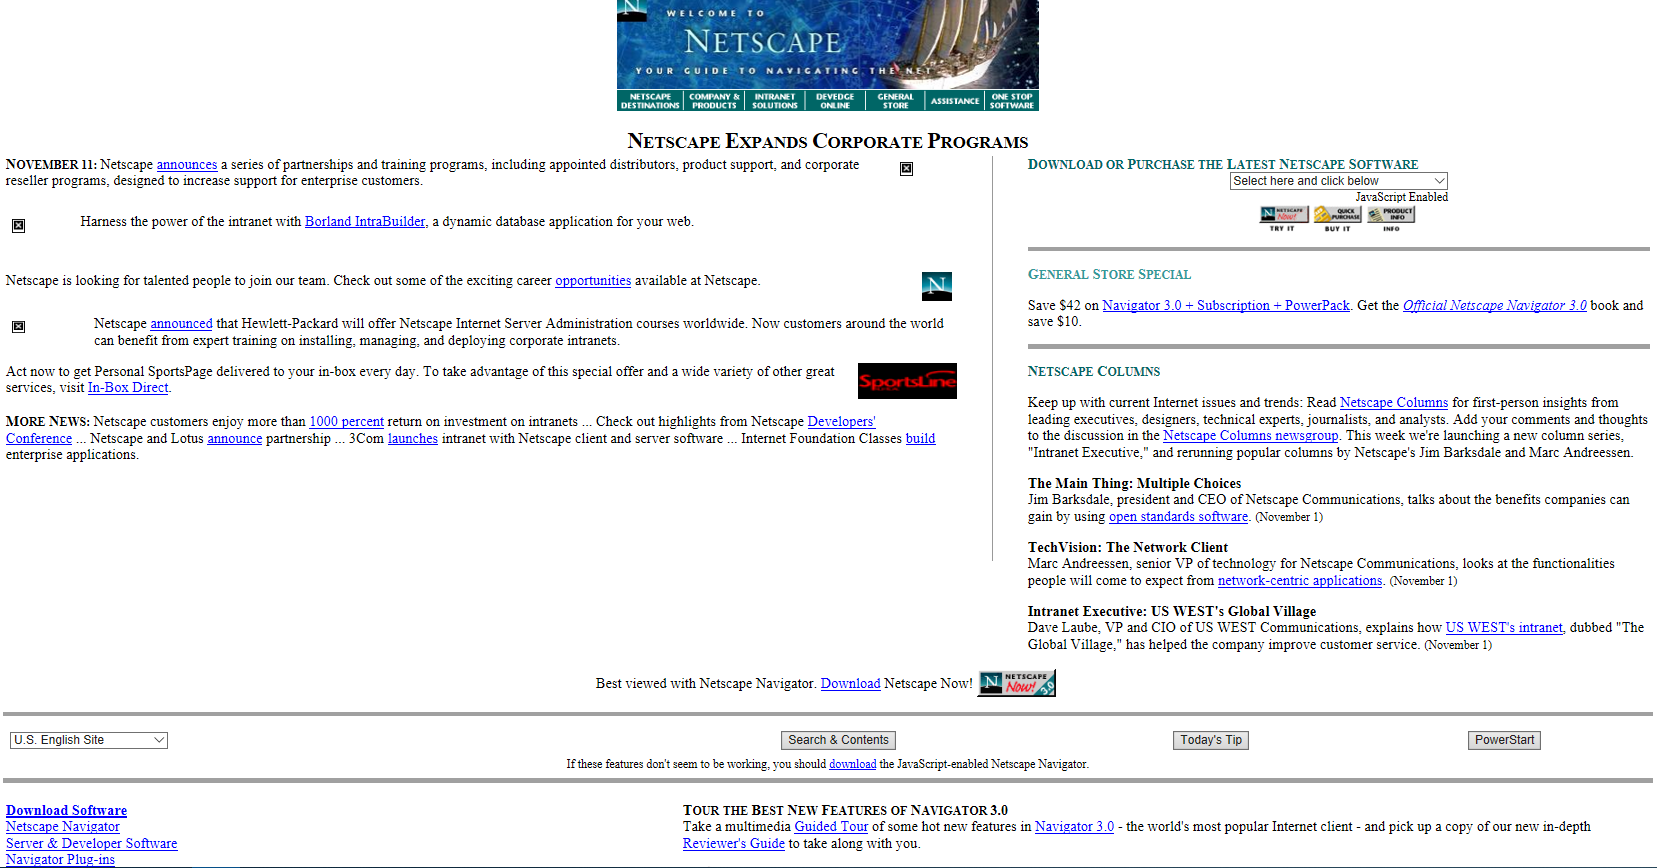 Netscape

　ウェブブラウザーの「Netscape Navigator」がリリースされたのは1994年のことだ。Netscape Navigatorの関連製品は、当時生まれたばかりのワールドワイドウェブを利用するものだった。Netscapeは使いやすかったため、1997年にリリースされた「Internet Explorer 4.0」との競争でも健闘した。Netscapeは1998年にAOLに買収された。